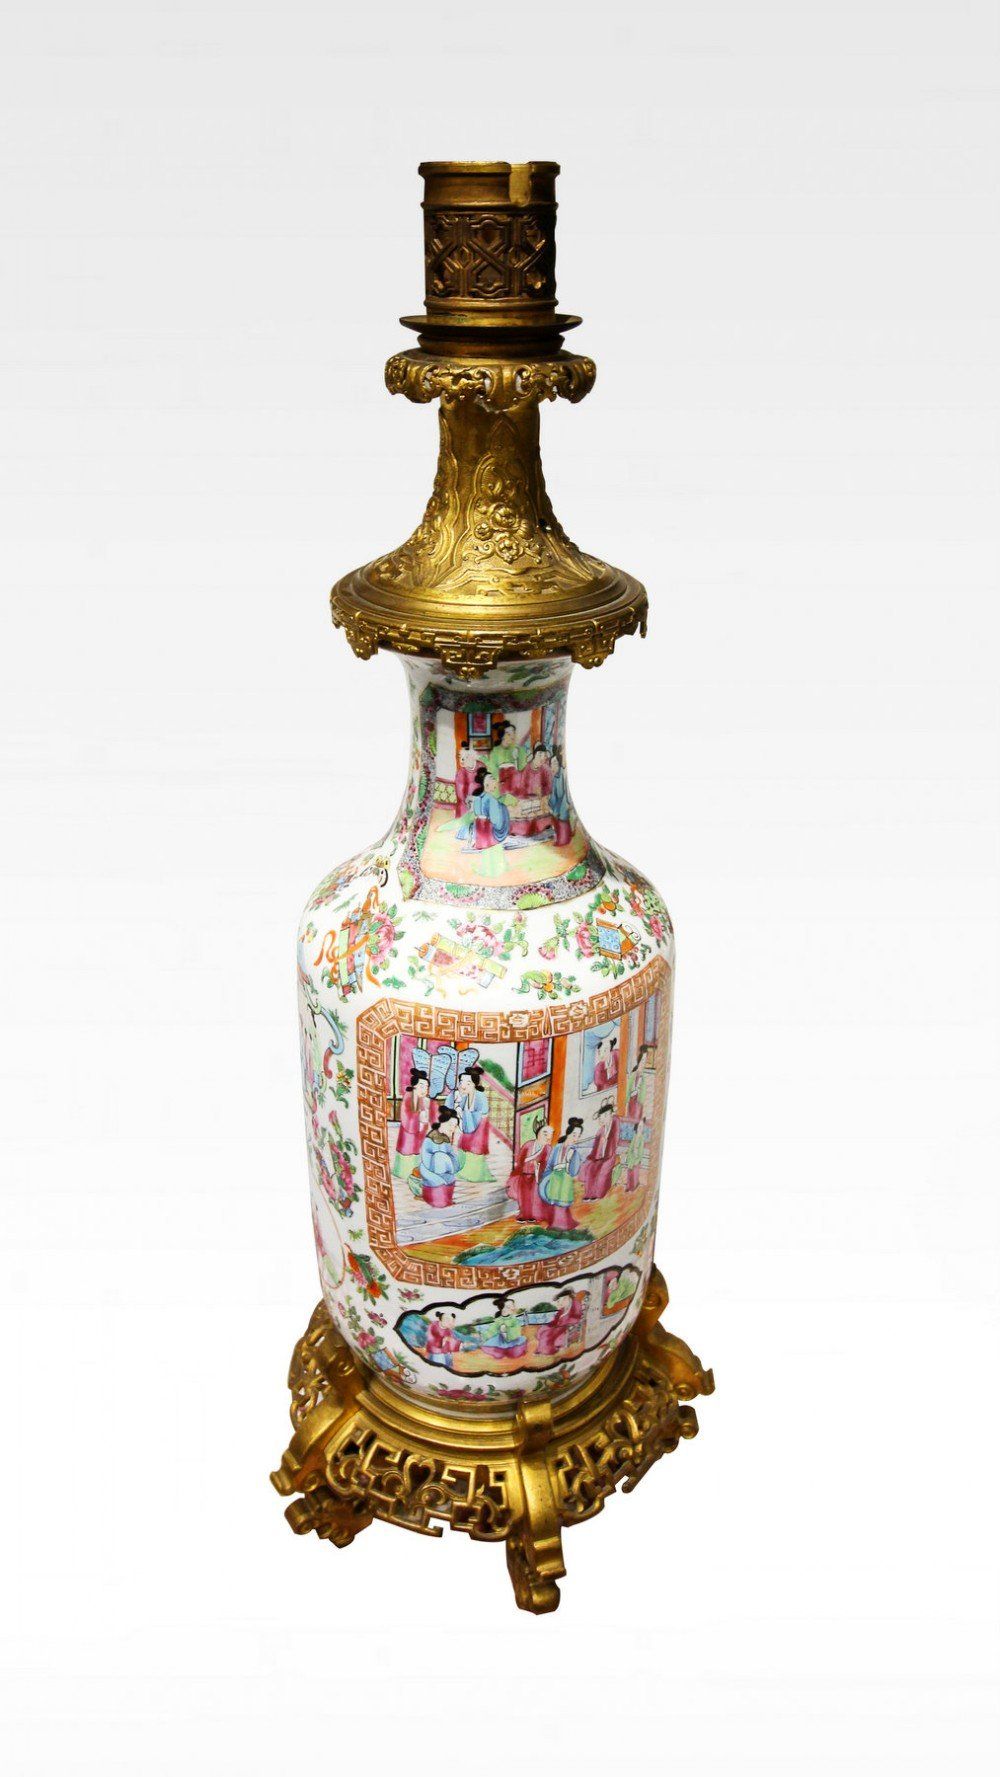 rose medallion table lamp